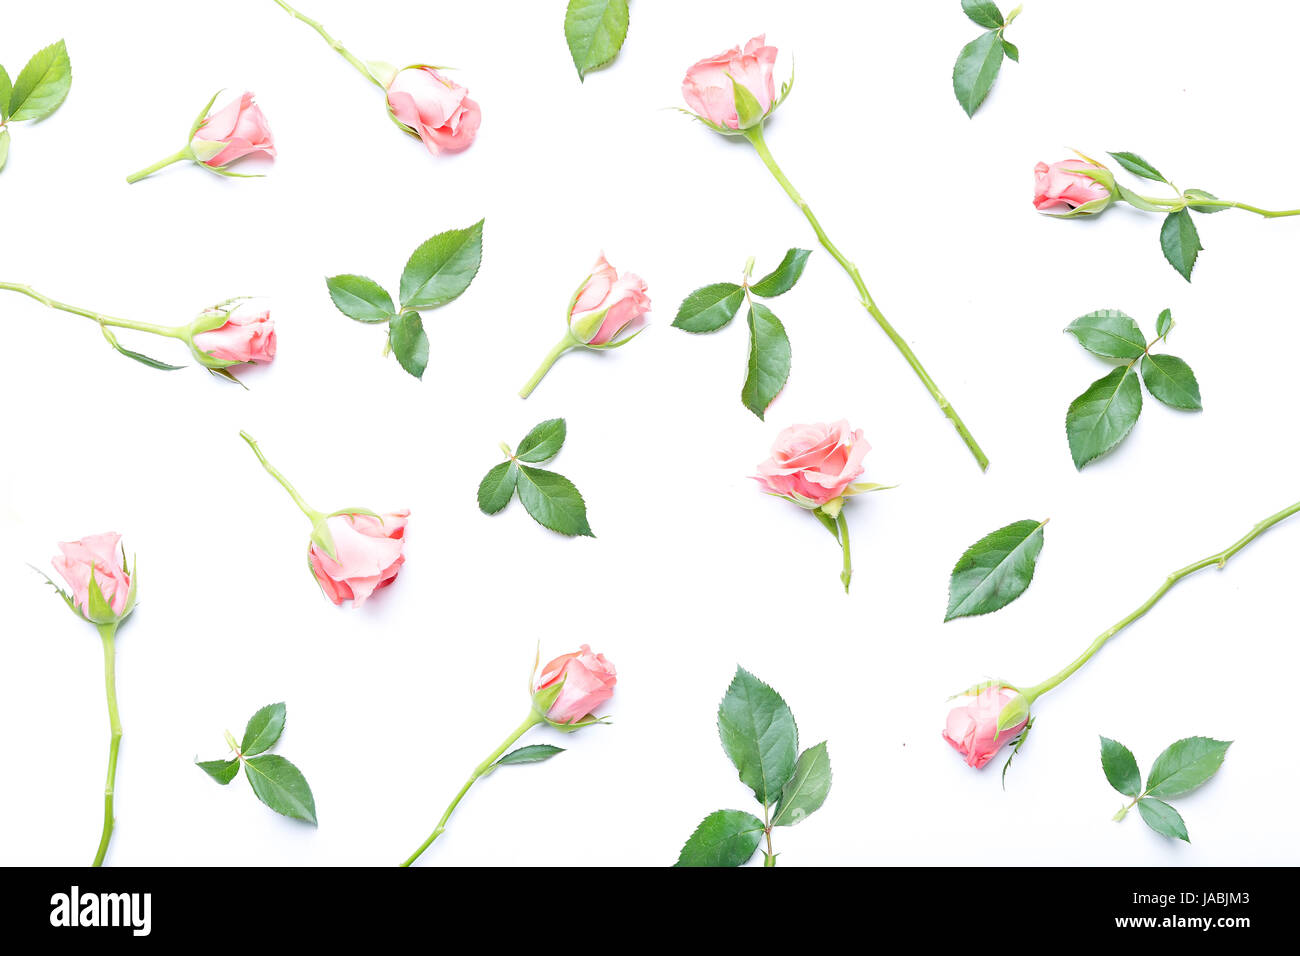 Rosen, die isoliert auf weißem Hintergrund, Blume Zusammensetzung Stockfoto